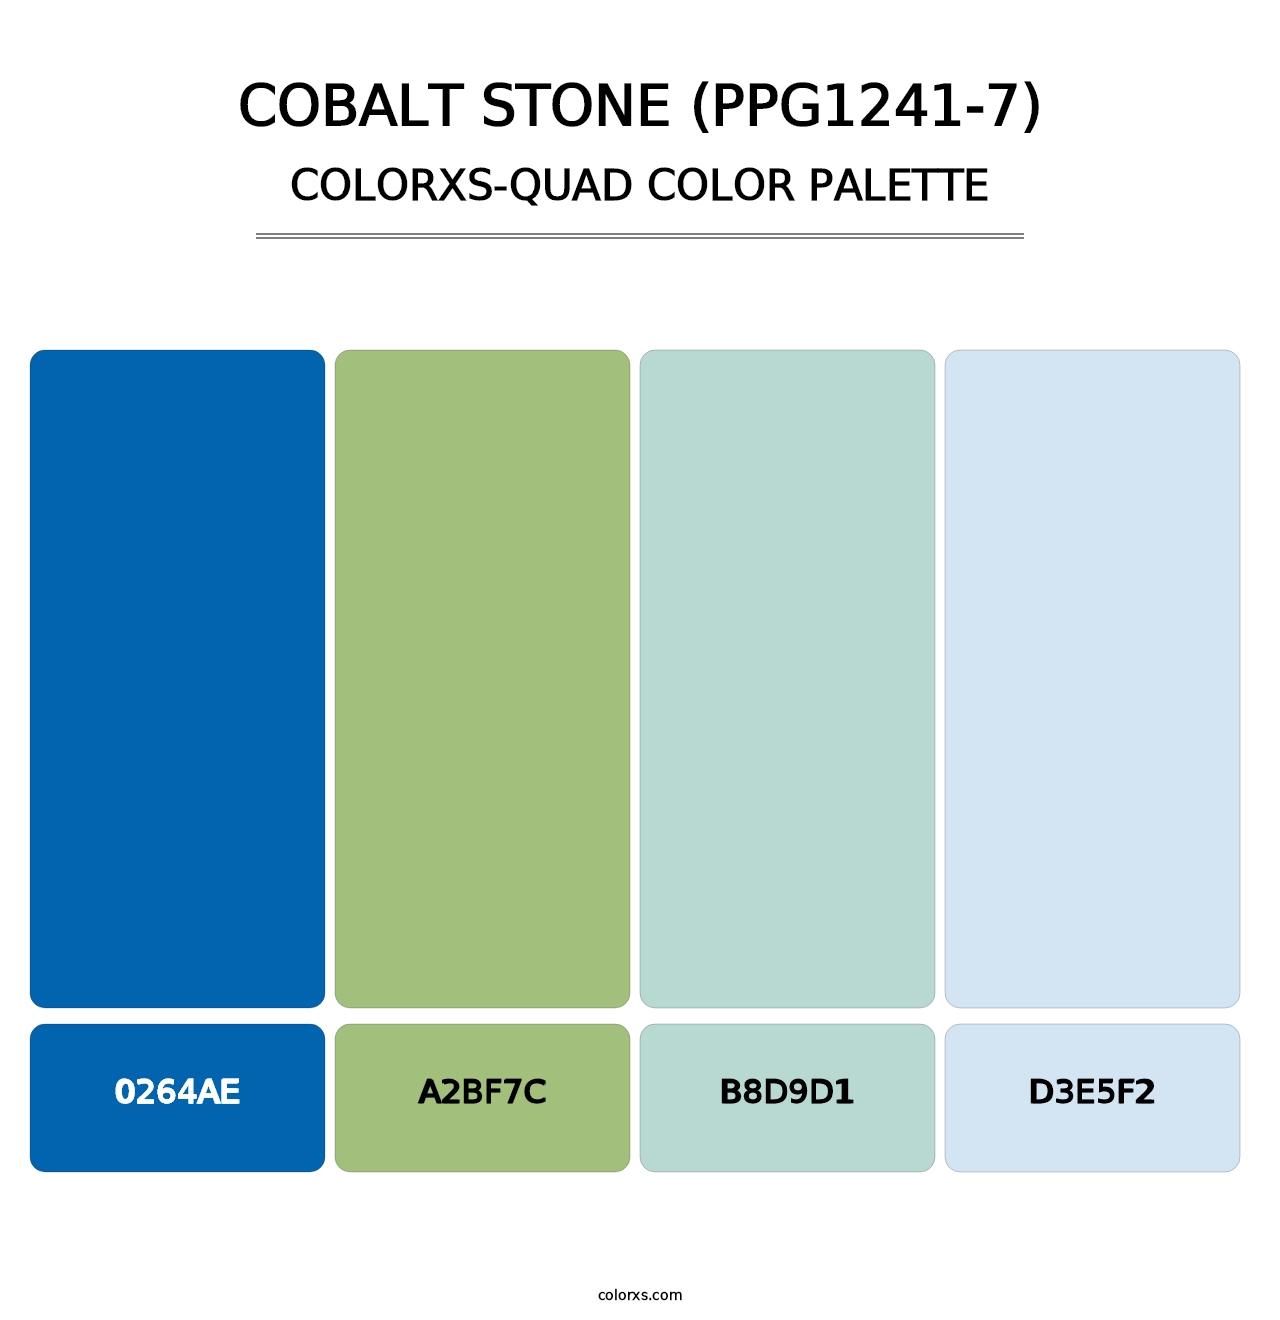 Cobalt Stone (PPG1241-7) - Colorxs Quad Palette